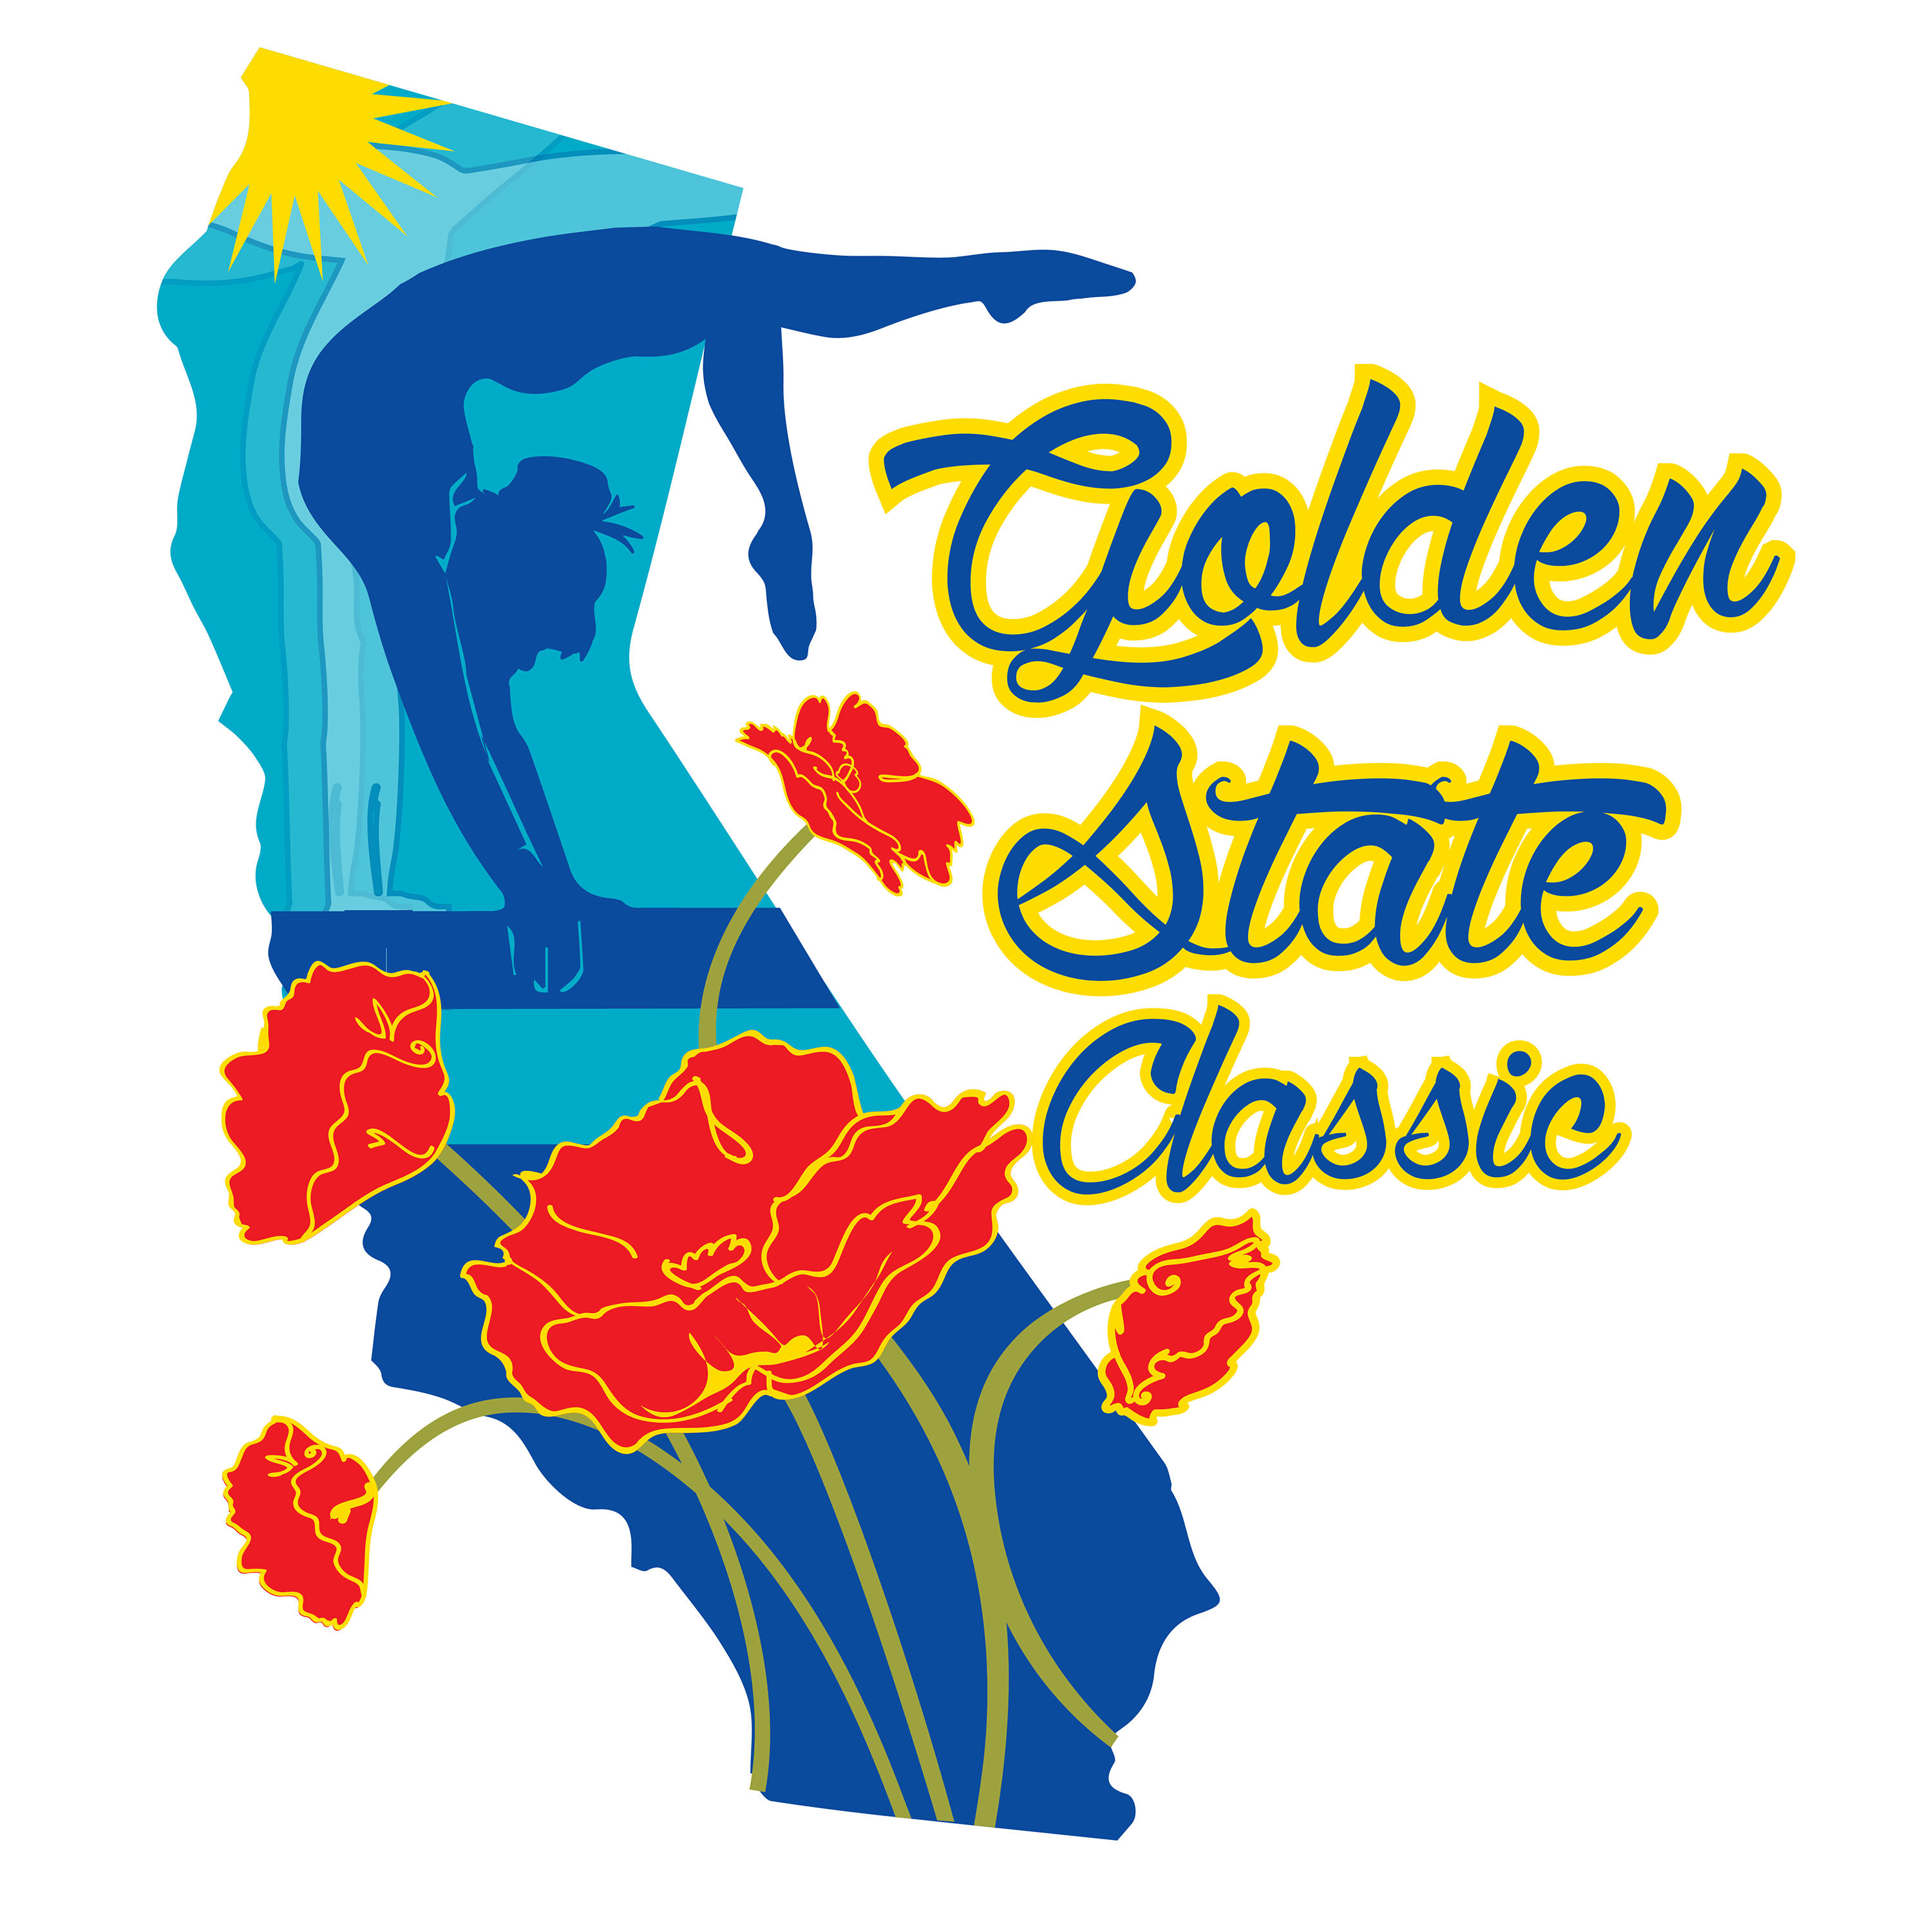 ca-golden-state-classic-jan2017-01-01